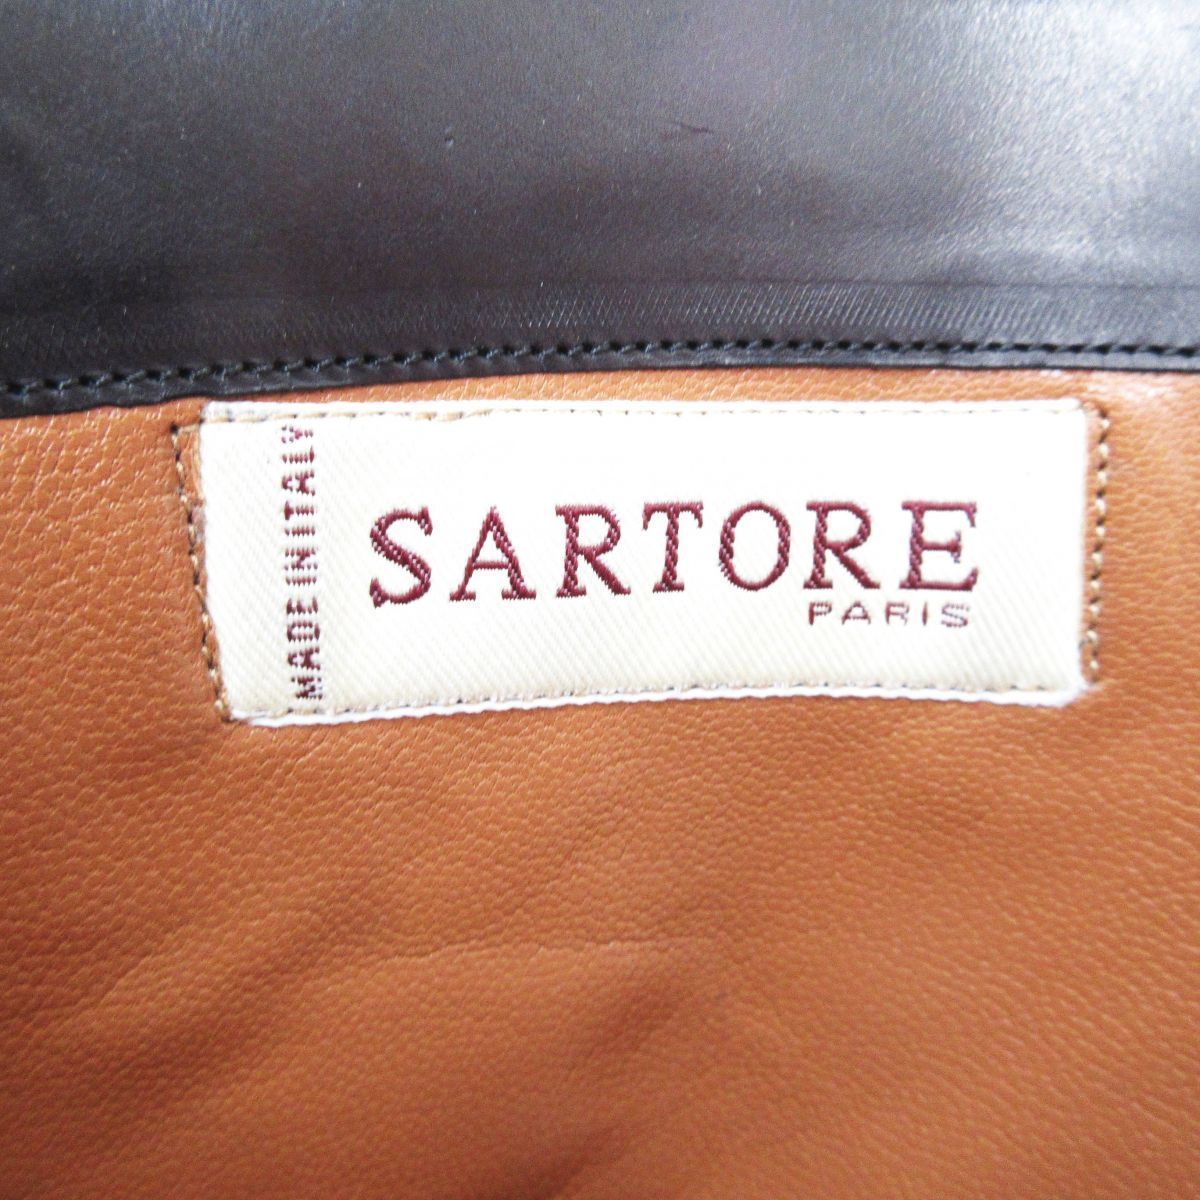  прекрасный товар SARTORE Sartre кожа раунд tu коричневый n ключ каблук сапоги жокей ботинки 35 примерно 22.5cm чёрный черный 